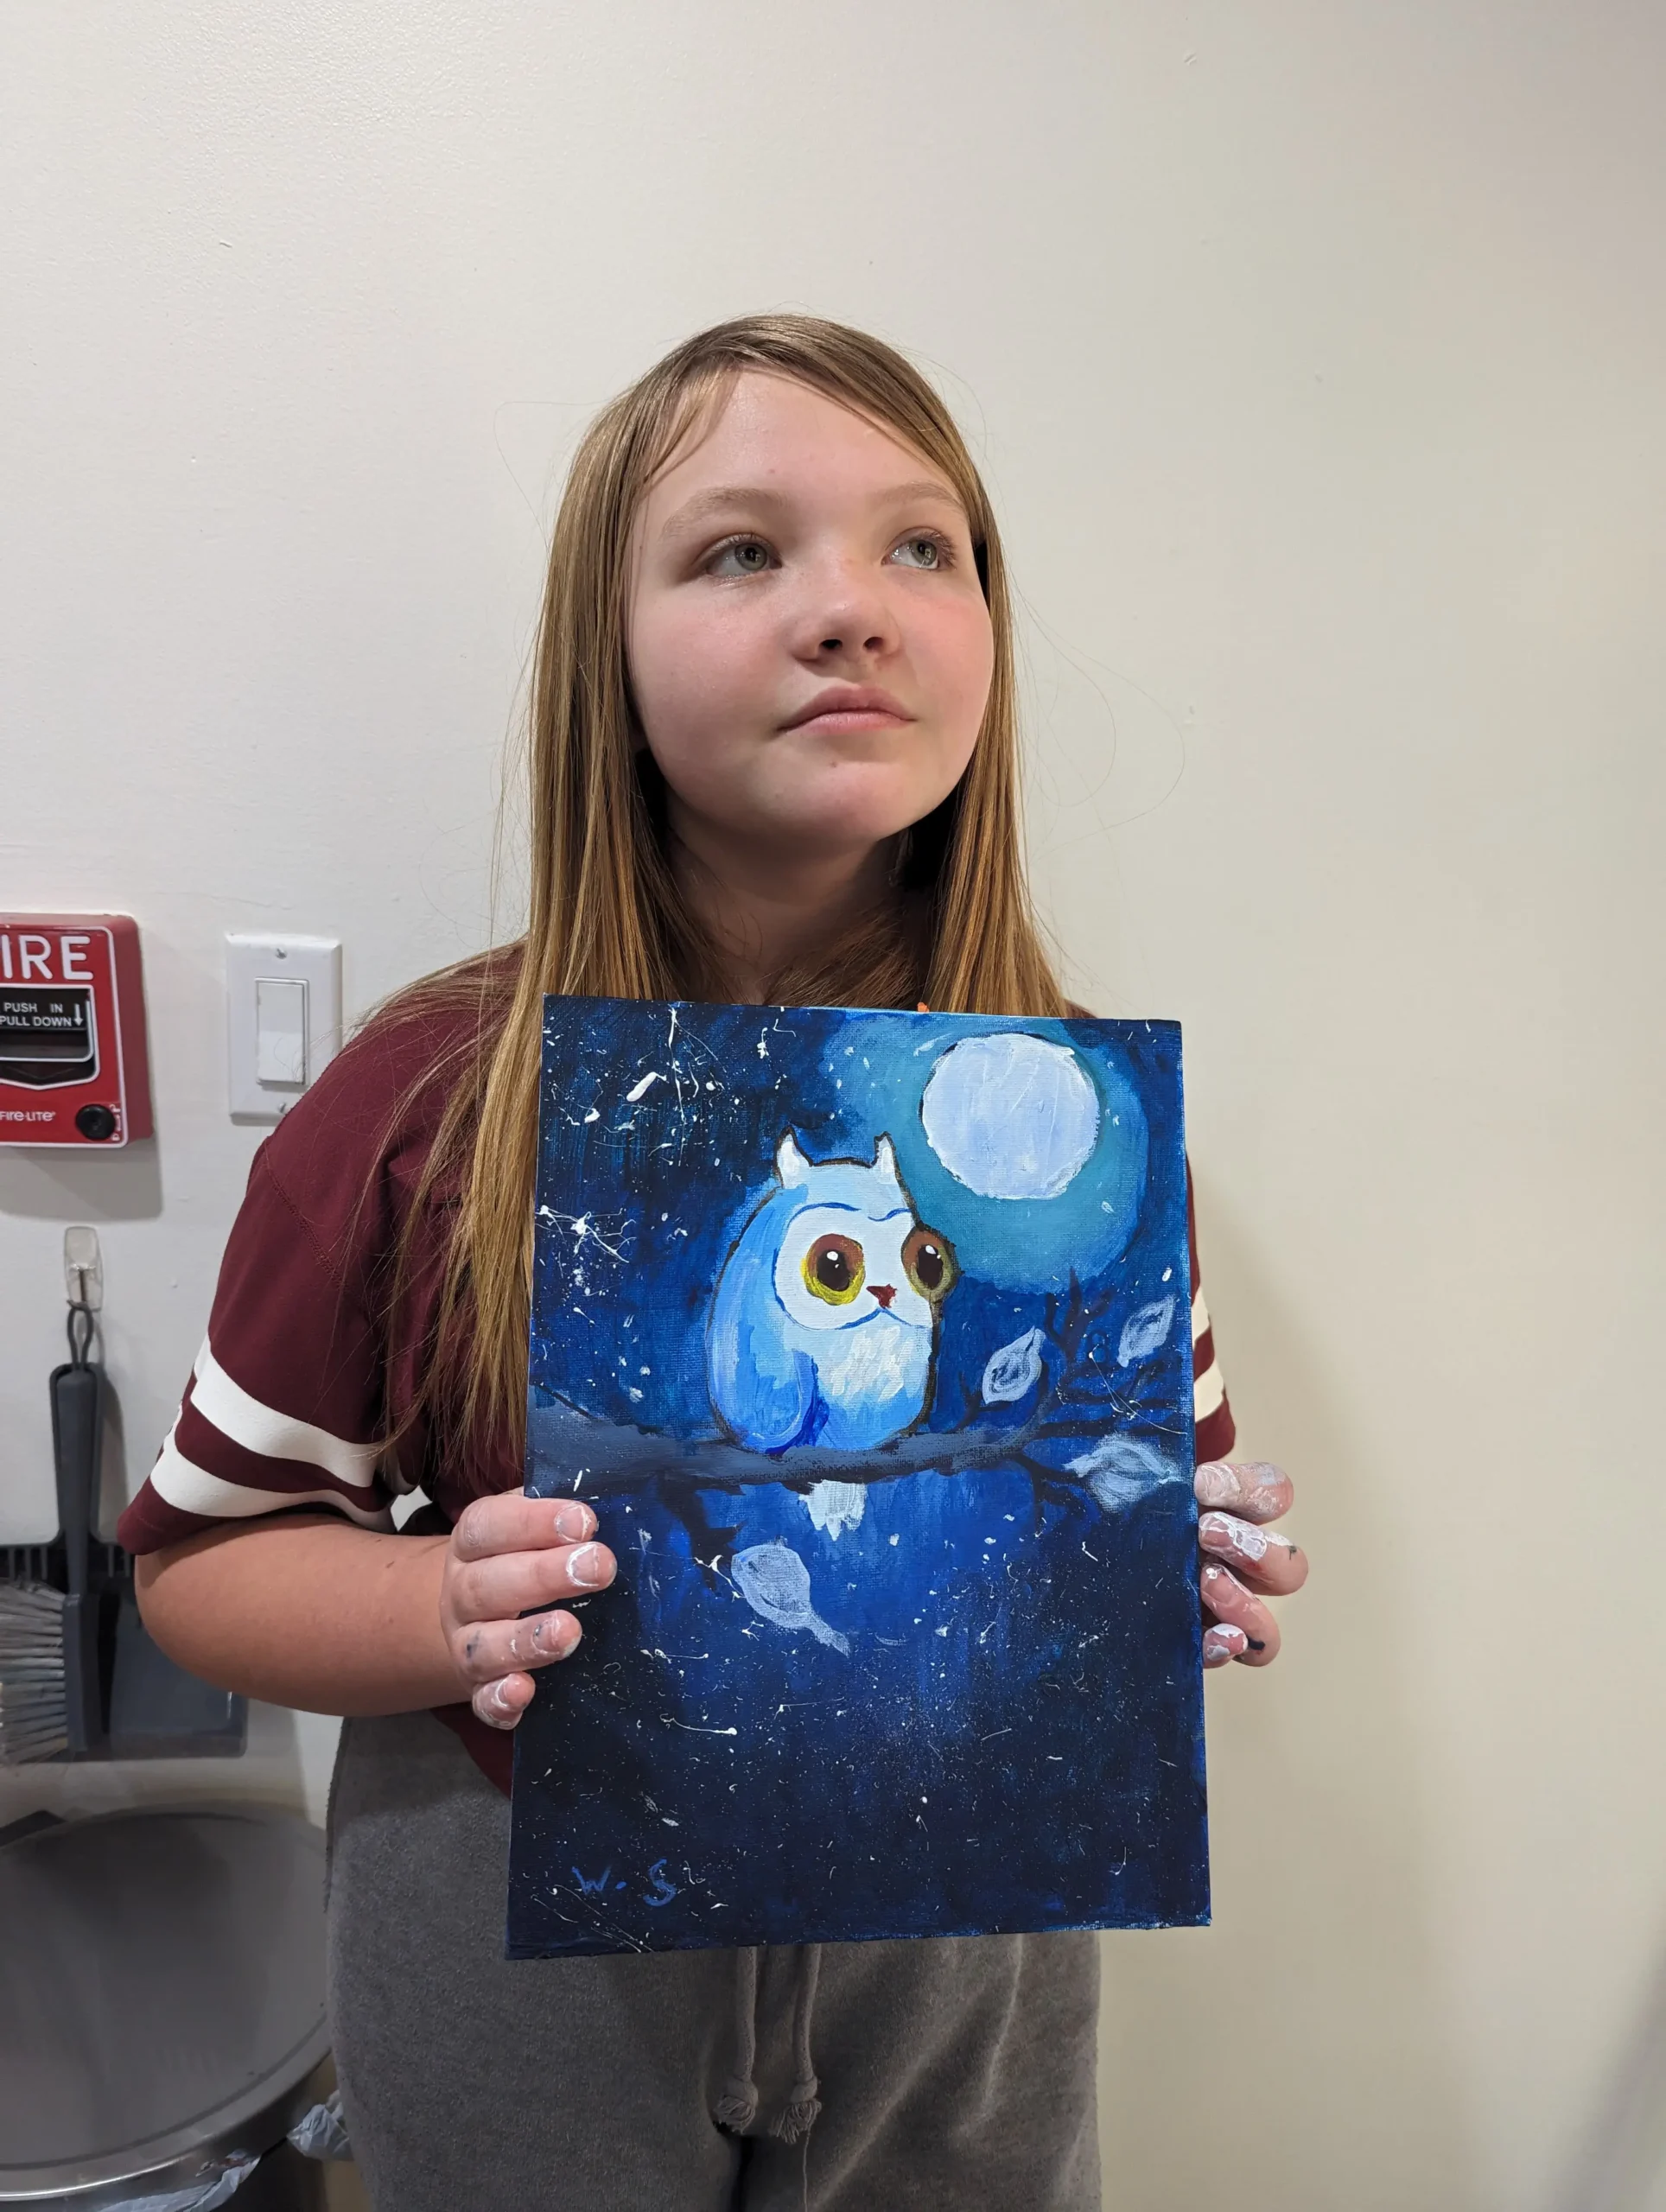 Girl holding artwork of owl